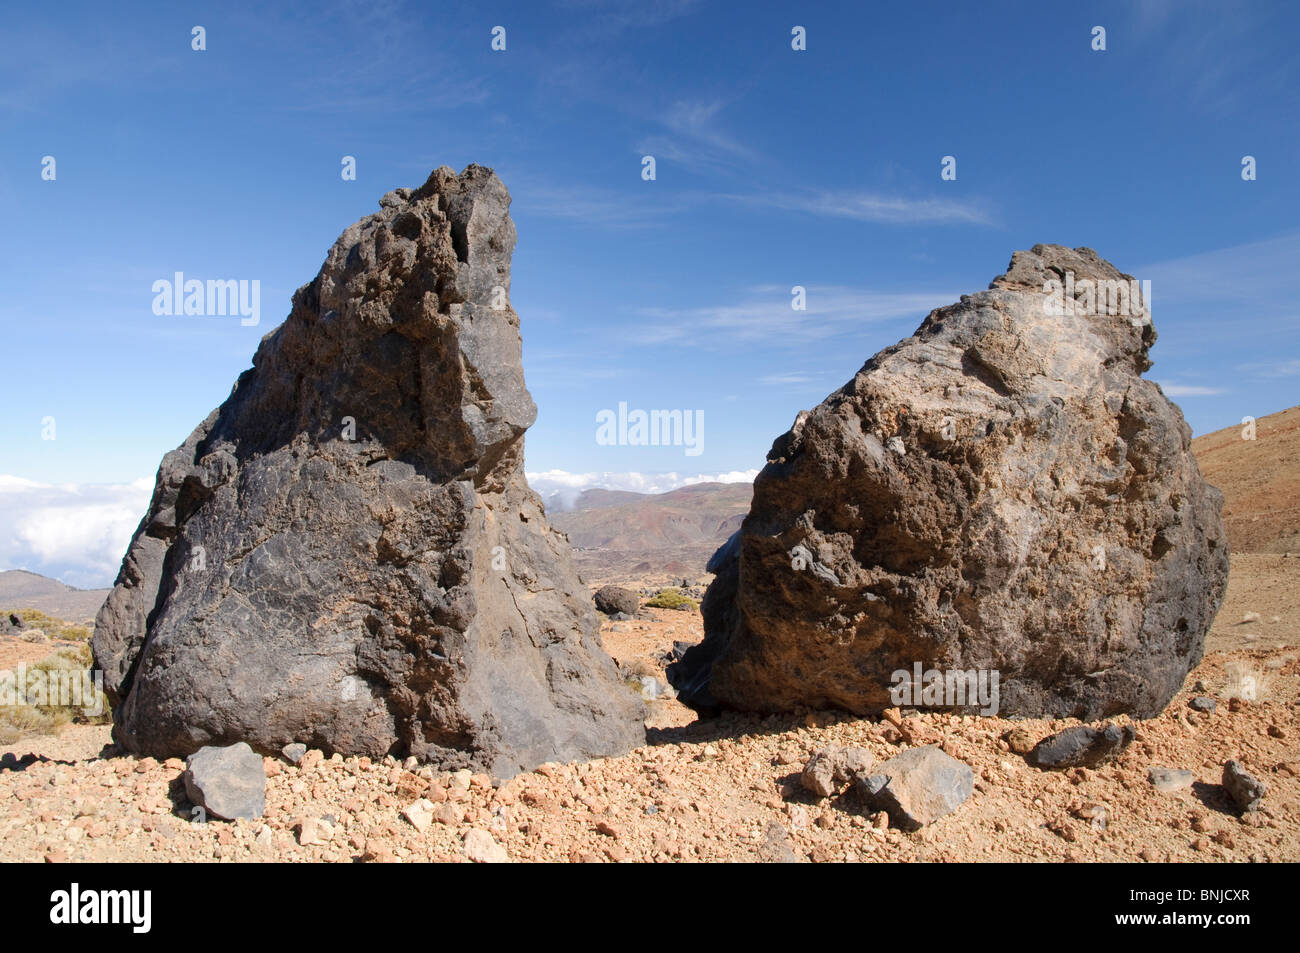 Bereich Aufnahme Europa Insel Insel Tag draußen im freien draußen Eier abgekühlt europäischen Klippe Rock Cliff Klippe Formationen form Stockfoto